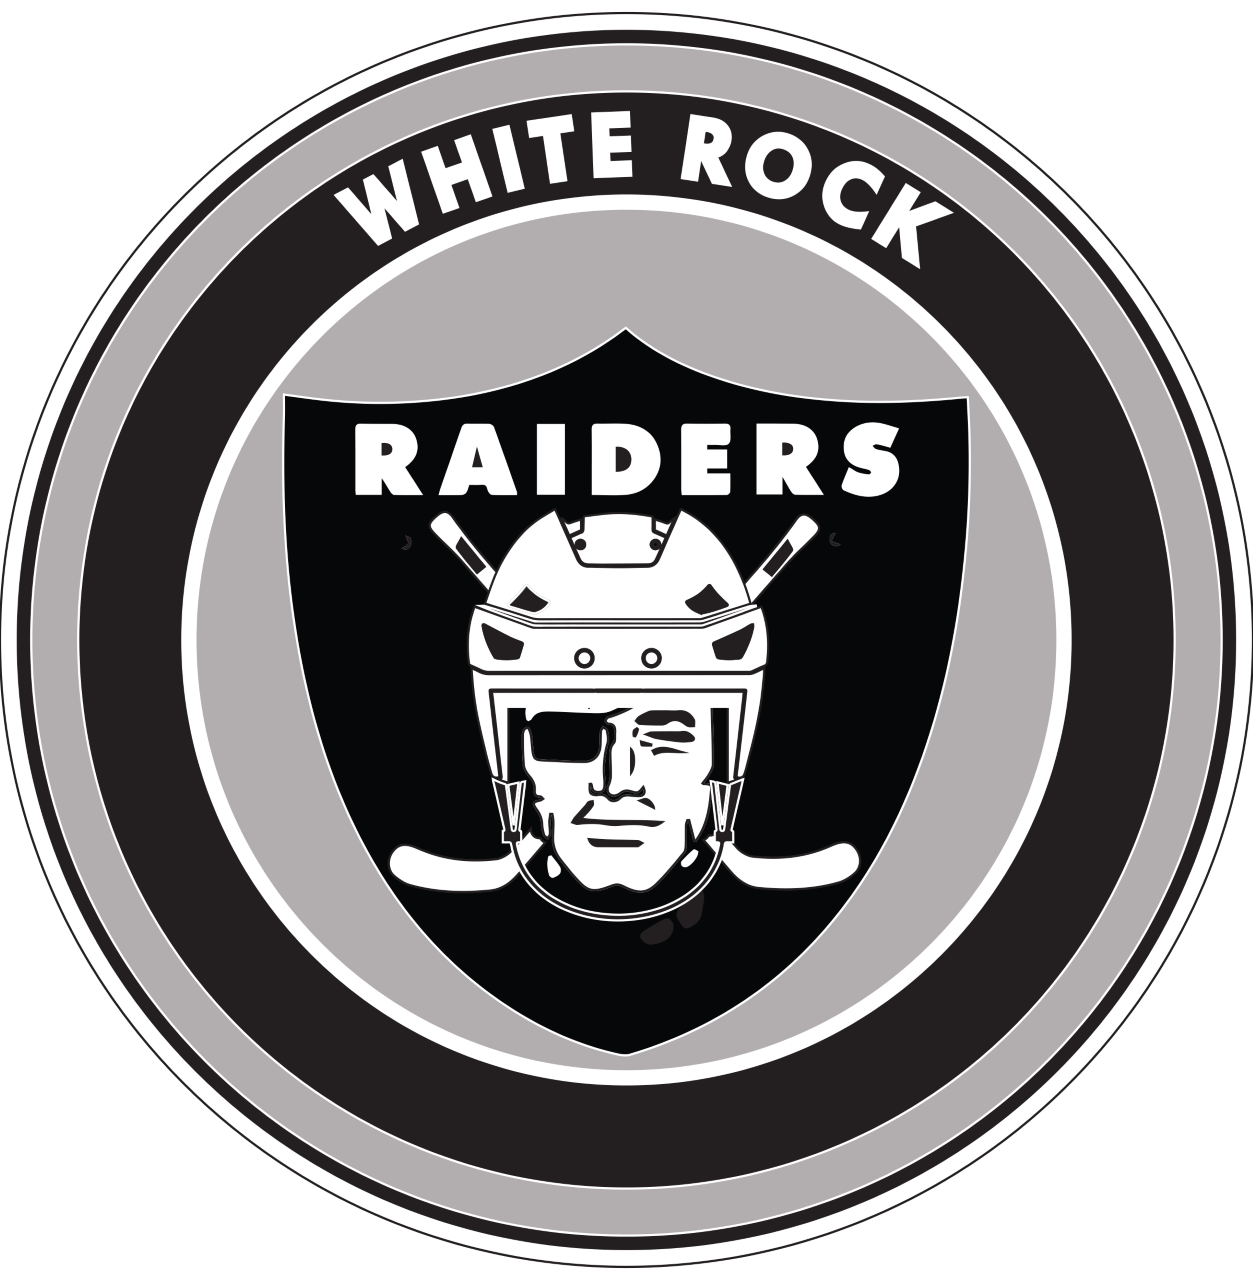 2014 White Rock Raiders